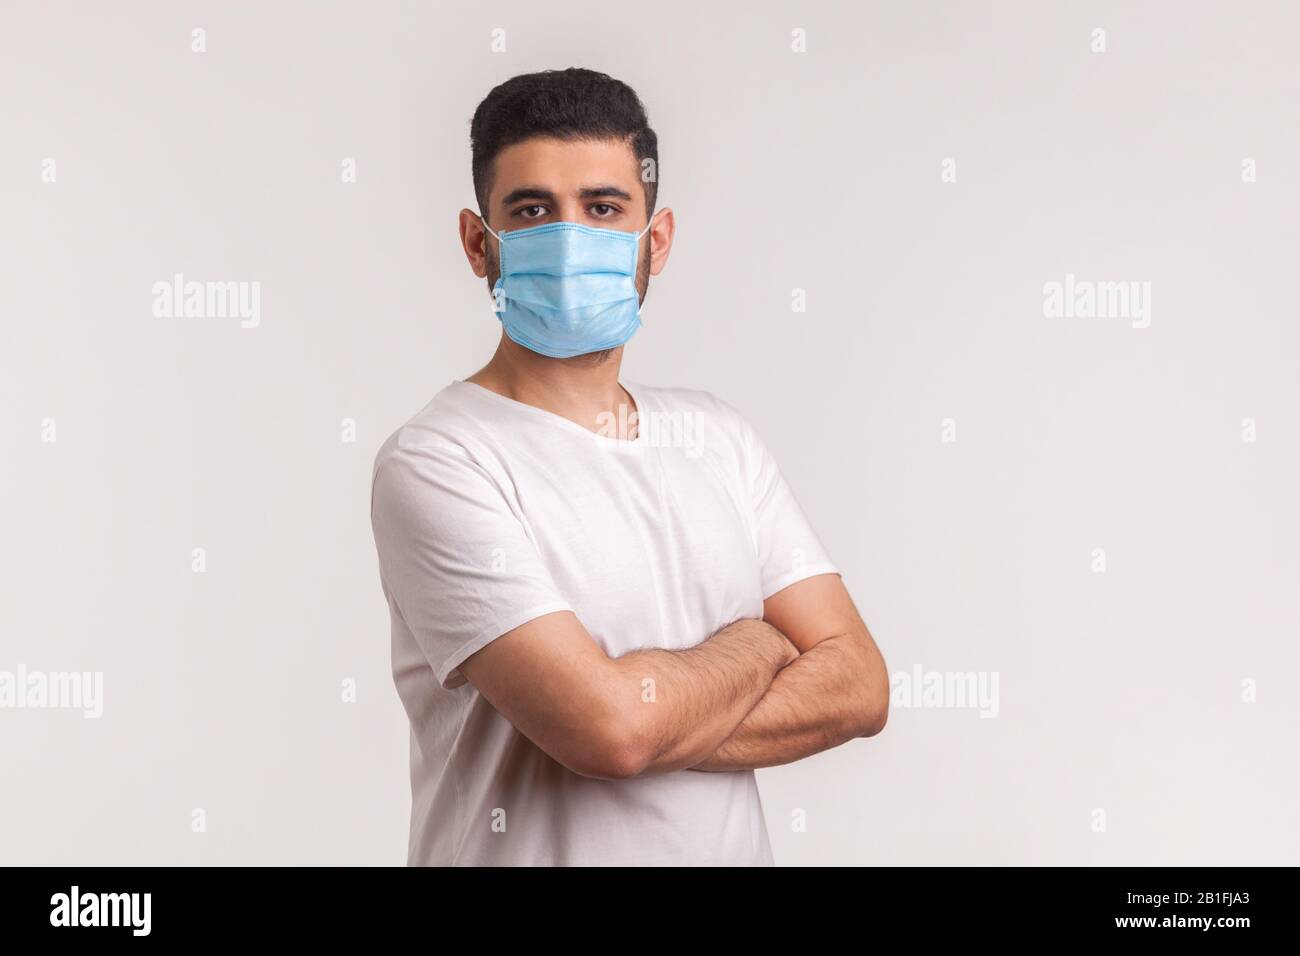 Protezione efficace contro il coronavirus. Uomo che tiene le mani incrociate e che indossa maschera igienica per prevenire l'infezione, malattie respiratorie come l'influenza, 2 Foto Stock